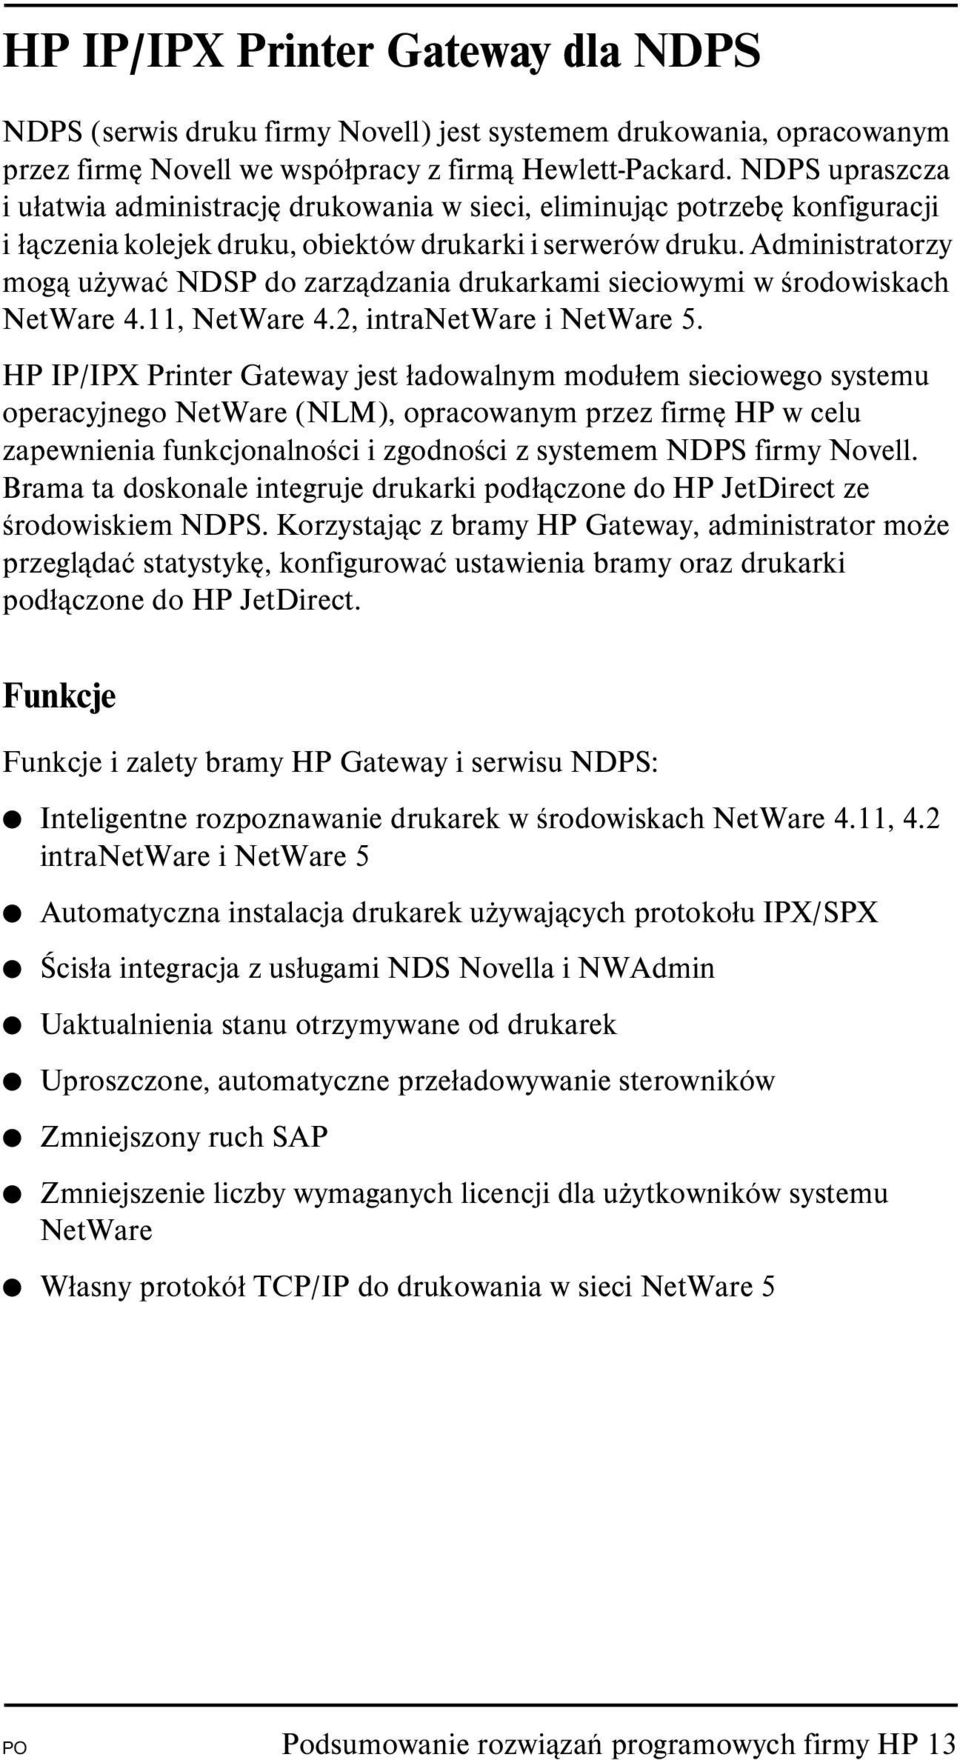 Administratorzy mogą używać NDSP do zarządzania drukarkami sieciowymi w środowiskach NetWare 4.11, NetWare 4.2, intranetware i NetWare 5.